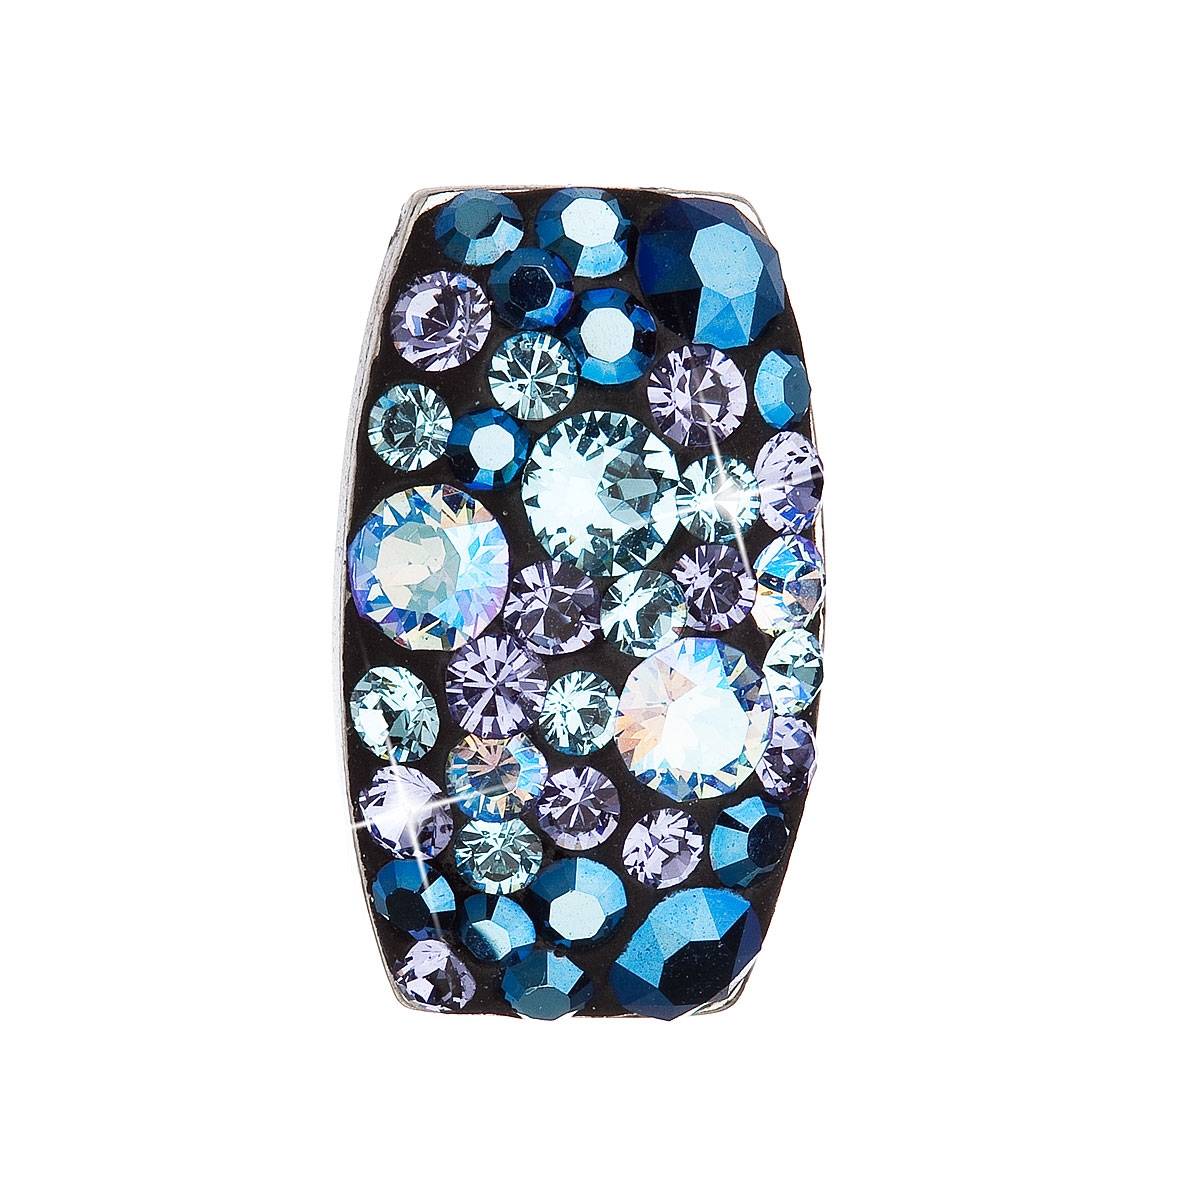 EVOLUTION GROUP CZ Stříbrný přívěšek Crystals from Swarovski®, Blue Style - 34194.3 Blue Style